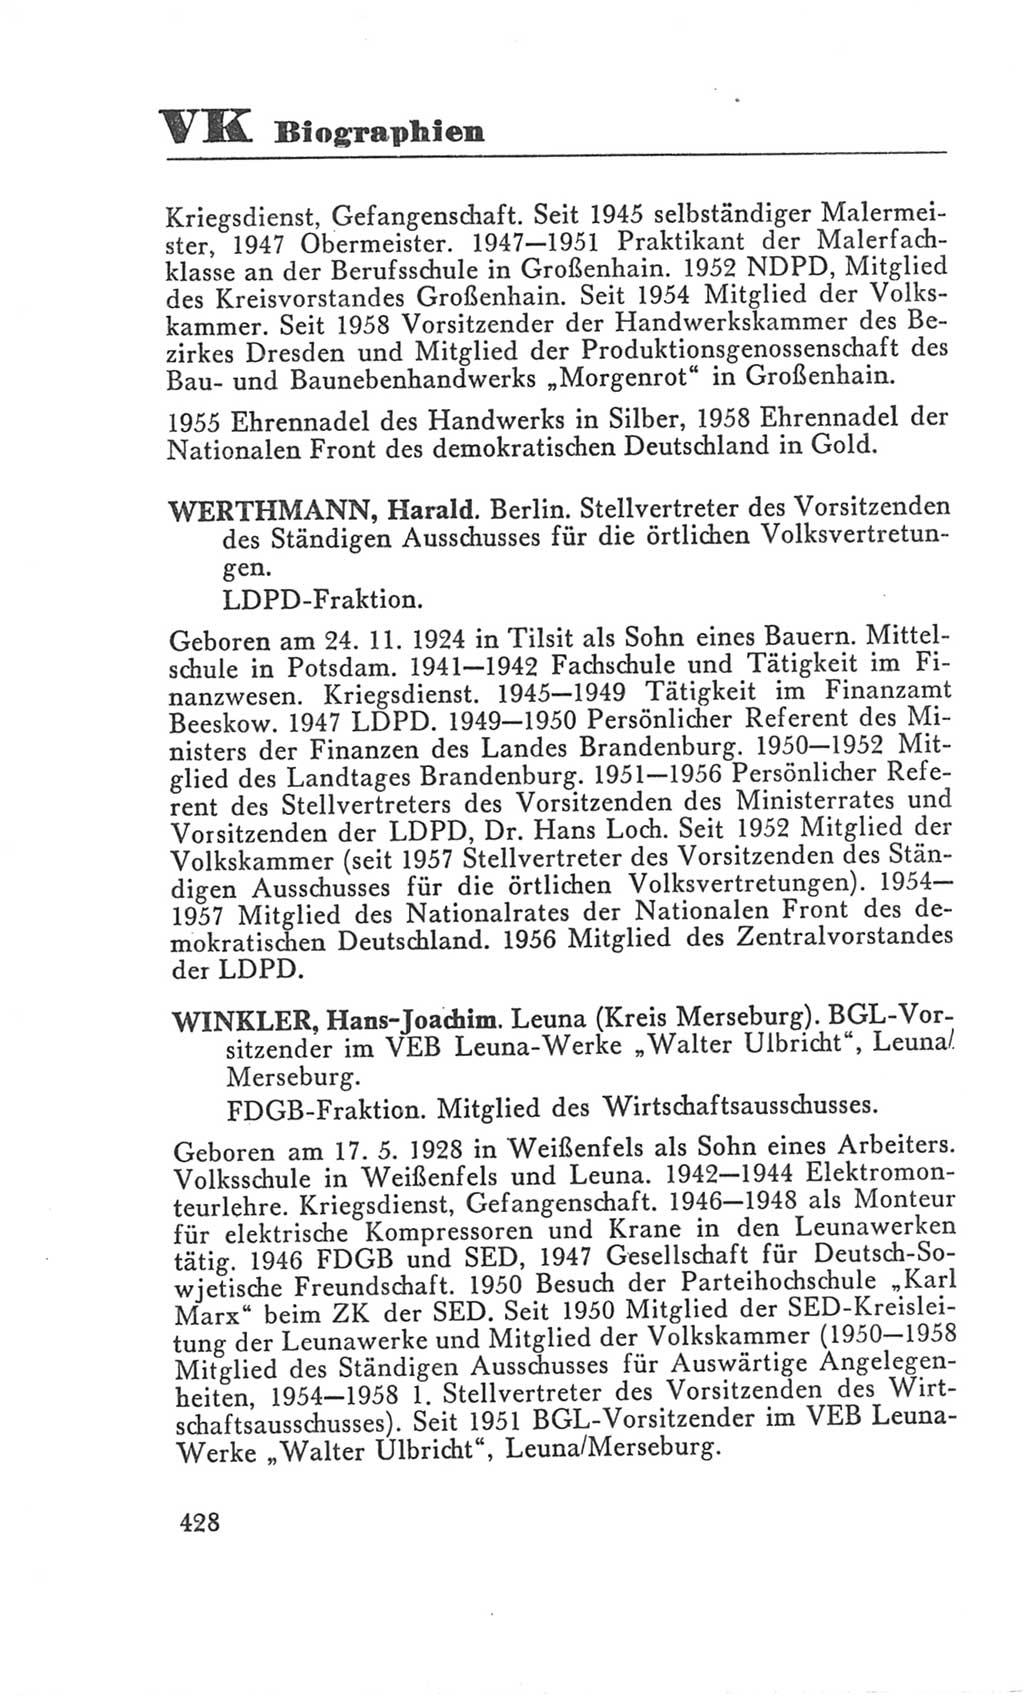 Handbuch der Volkskammer (VK) der Deutschen Demokratischen Republik (DDR), 3. Wahlperiode 1958-1963, Seite 428 (Hdb. VK. DDR 3. WP. 1958-1963, S. 428)